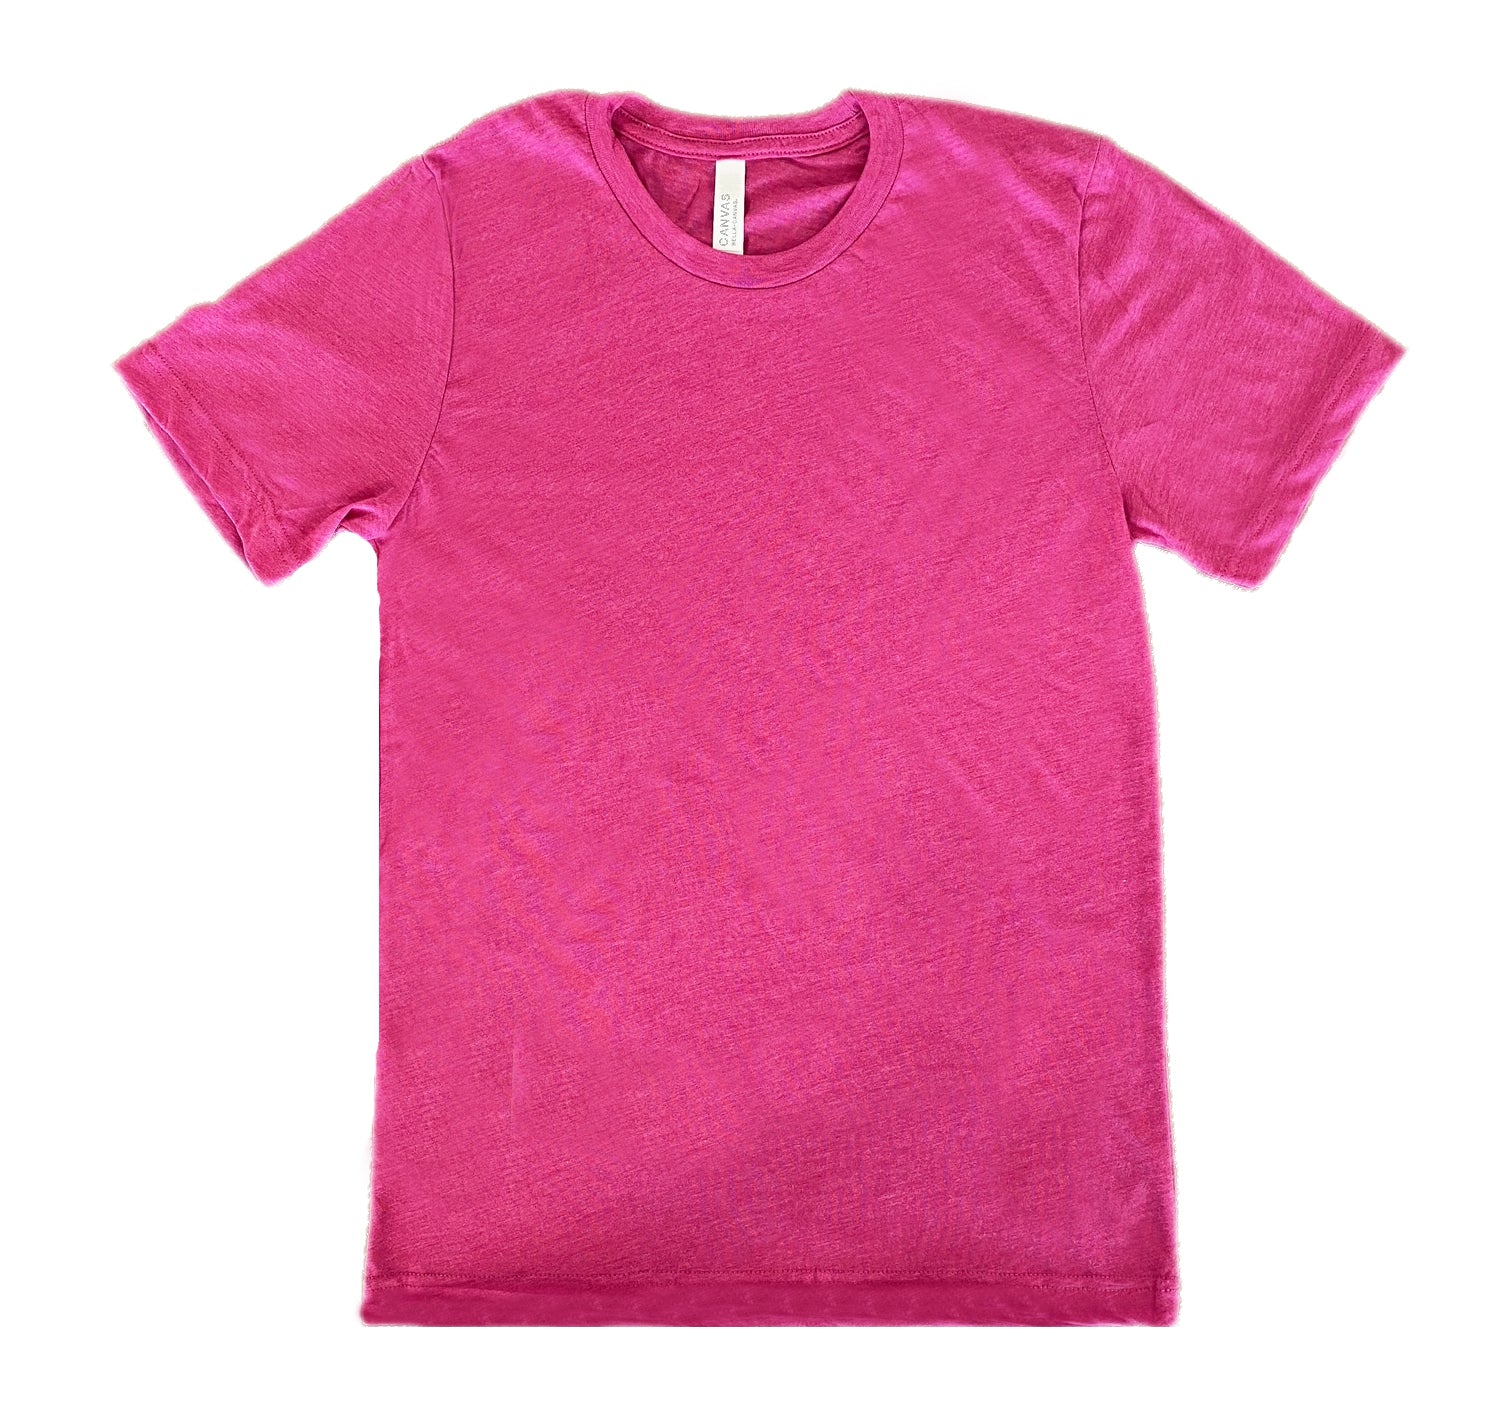 hot pink basic unisex shirt